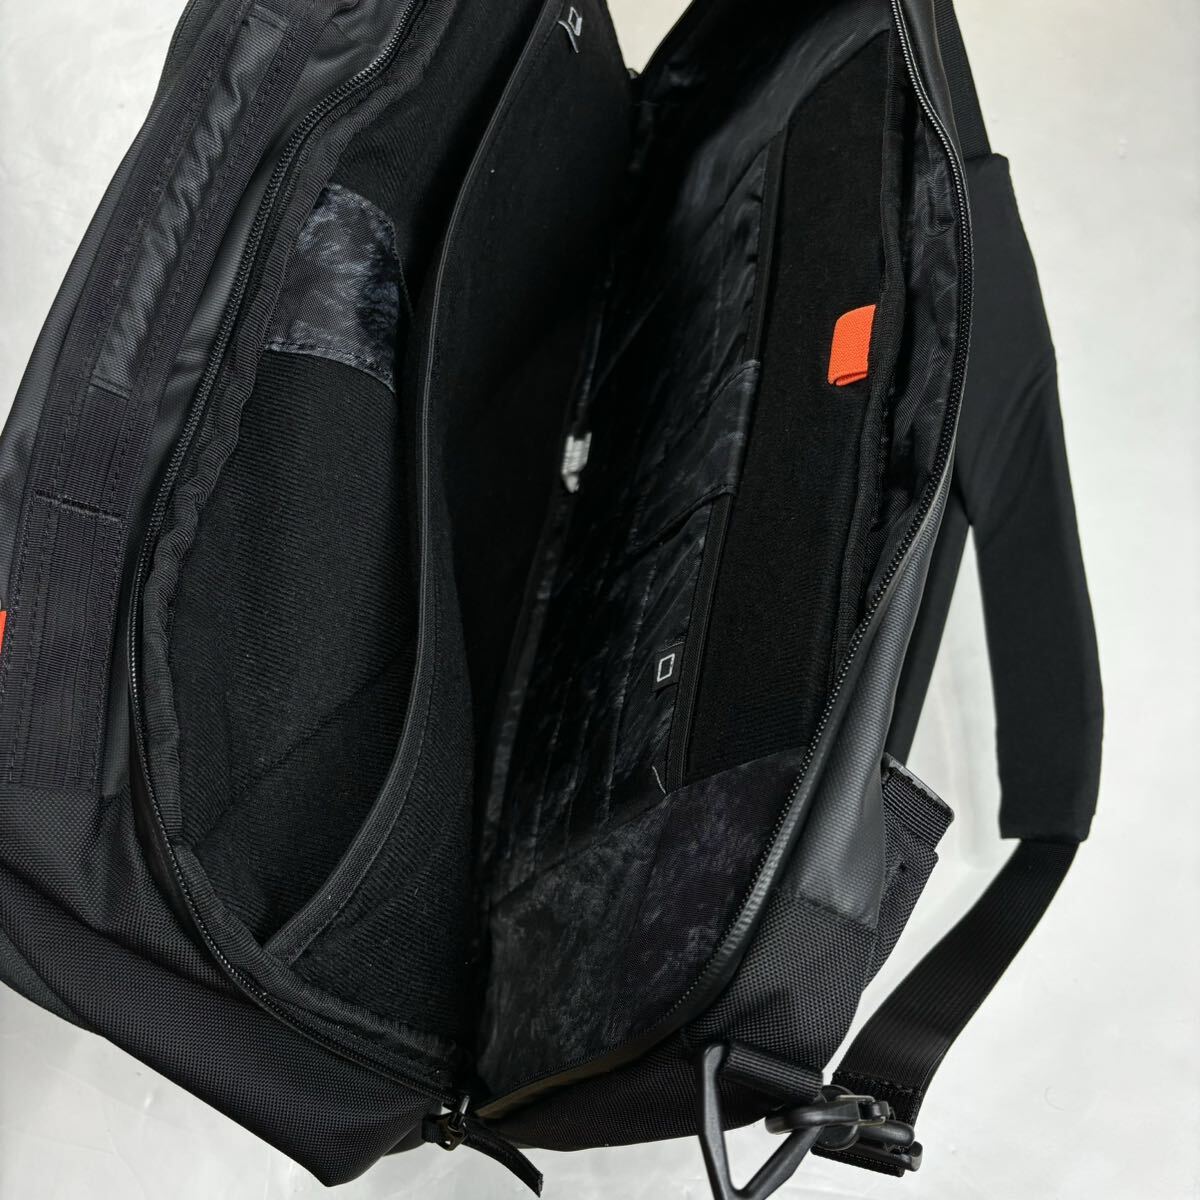 MAMMUT Mammut рюкзак рюкзак Day Pack рюкзак черный для мужчин и женщин портфель сумка ходить на работу сумка 